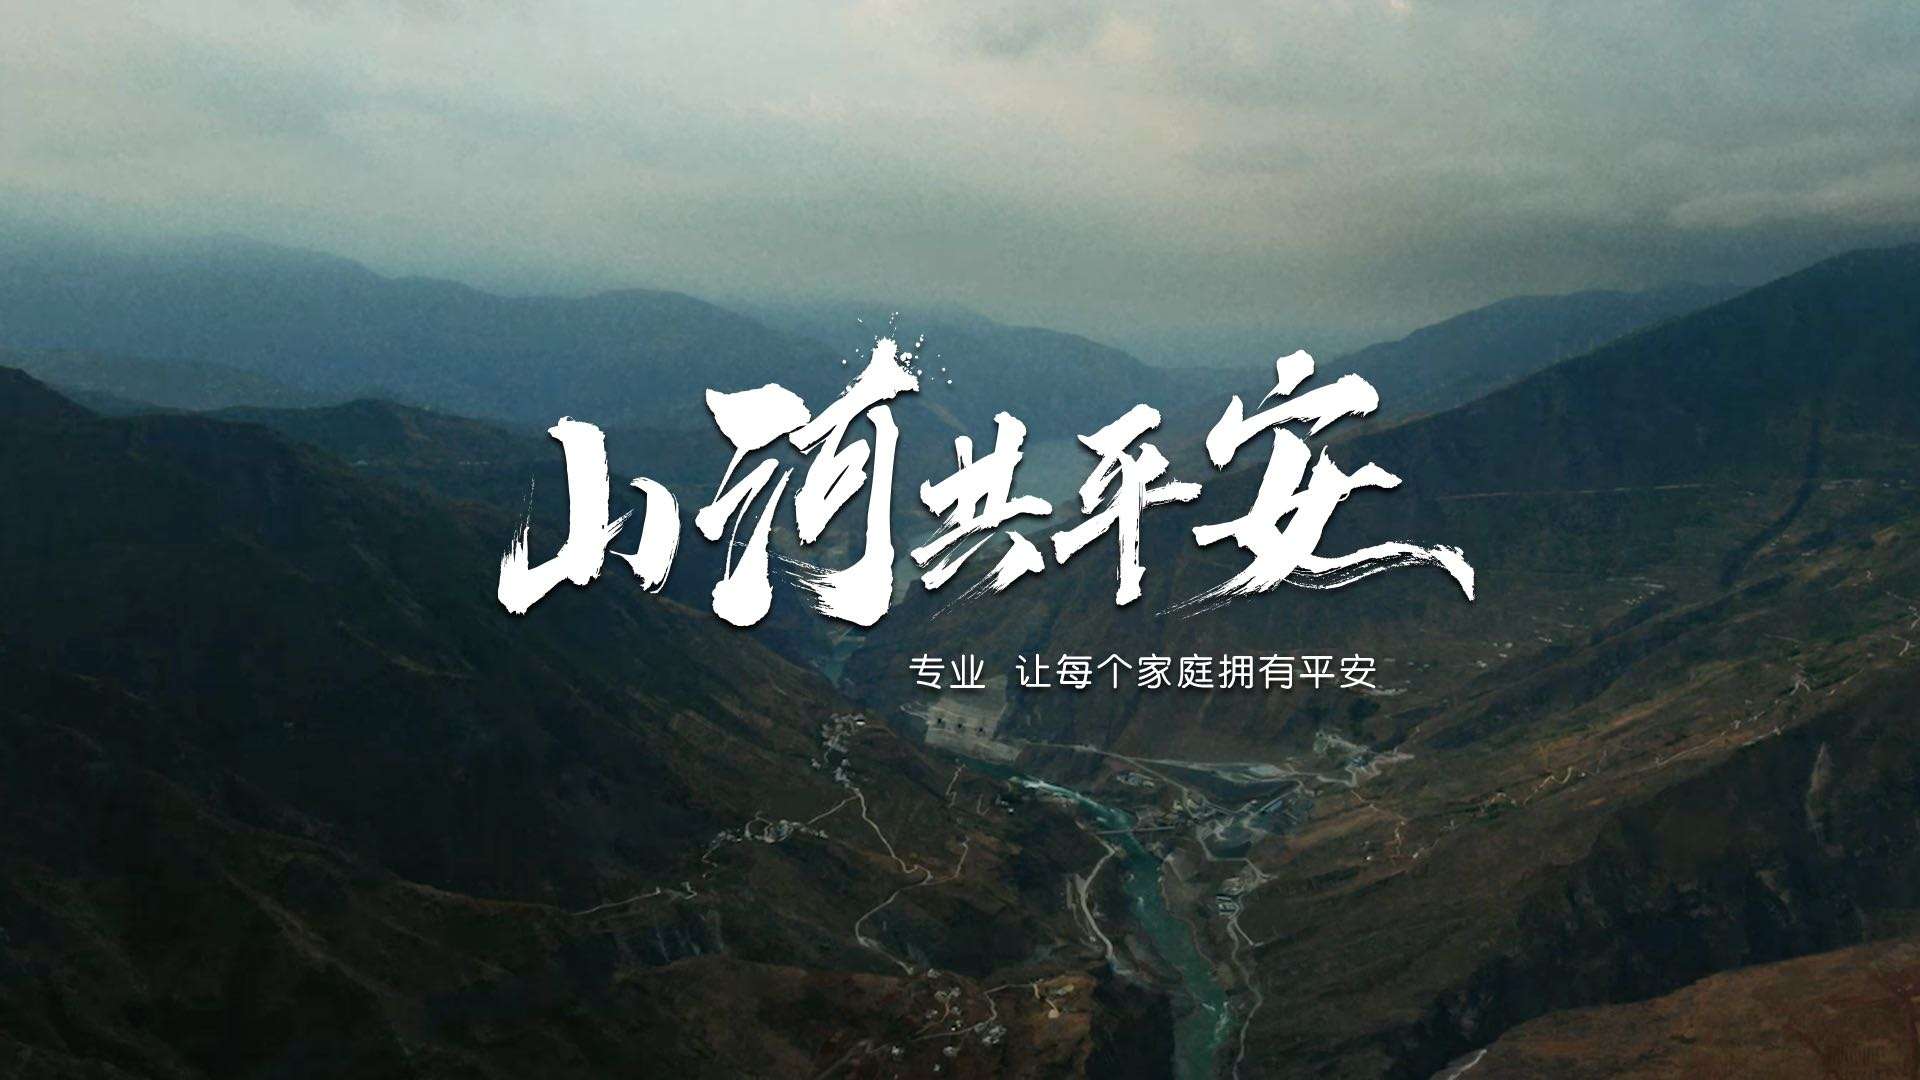 《山河共平安》中国平安35周年主题影片